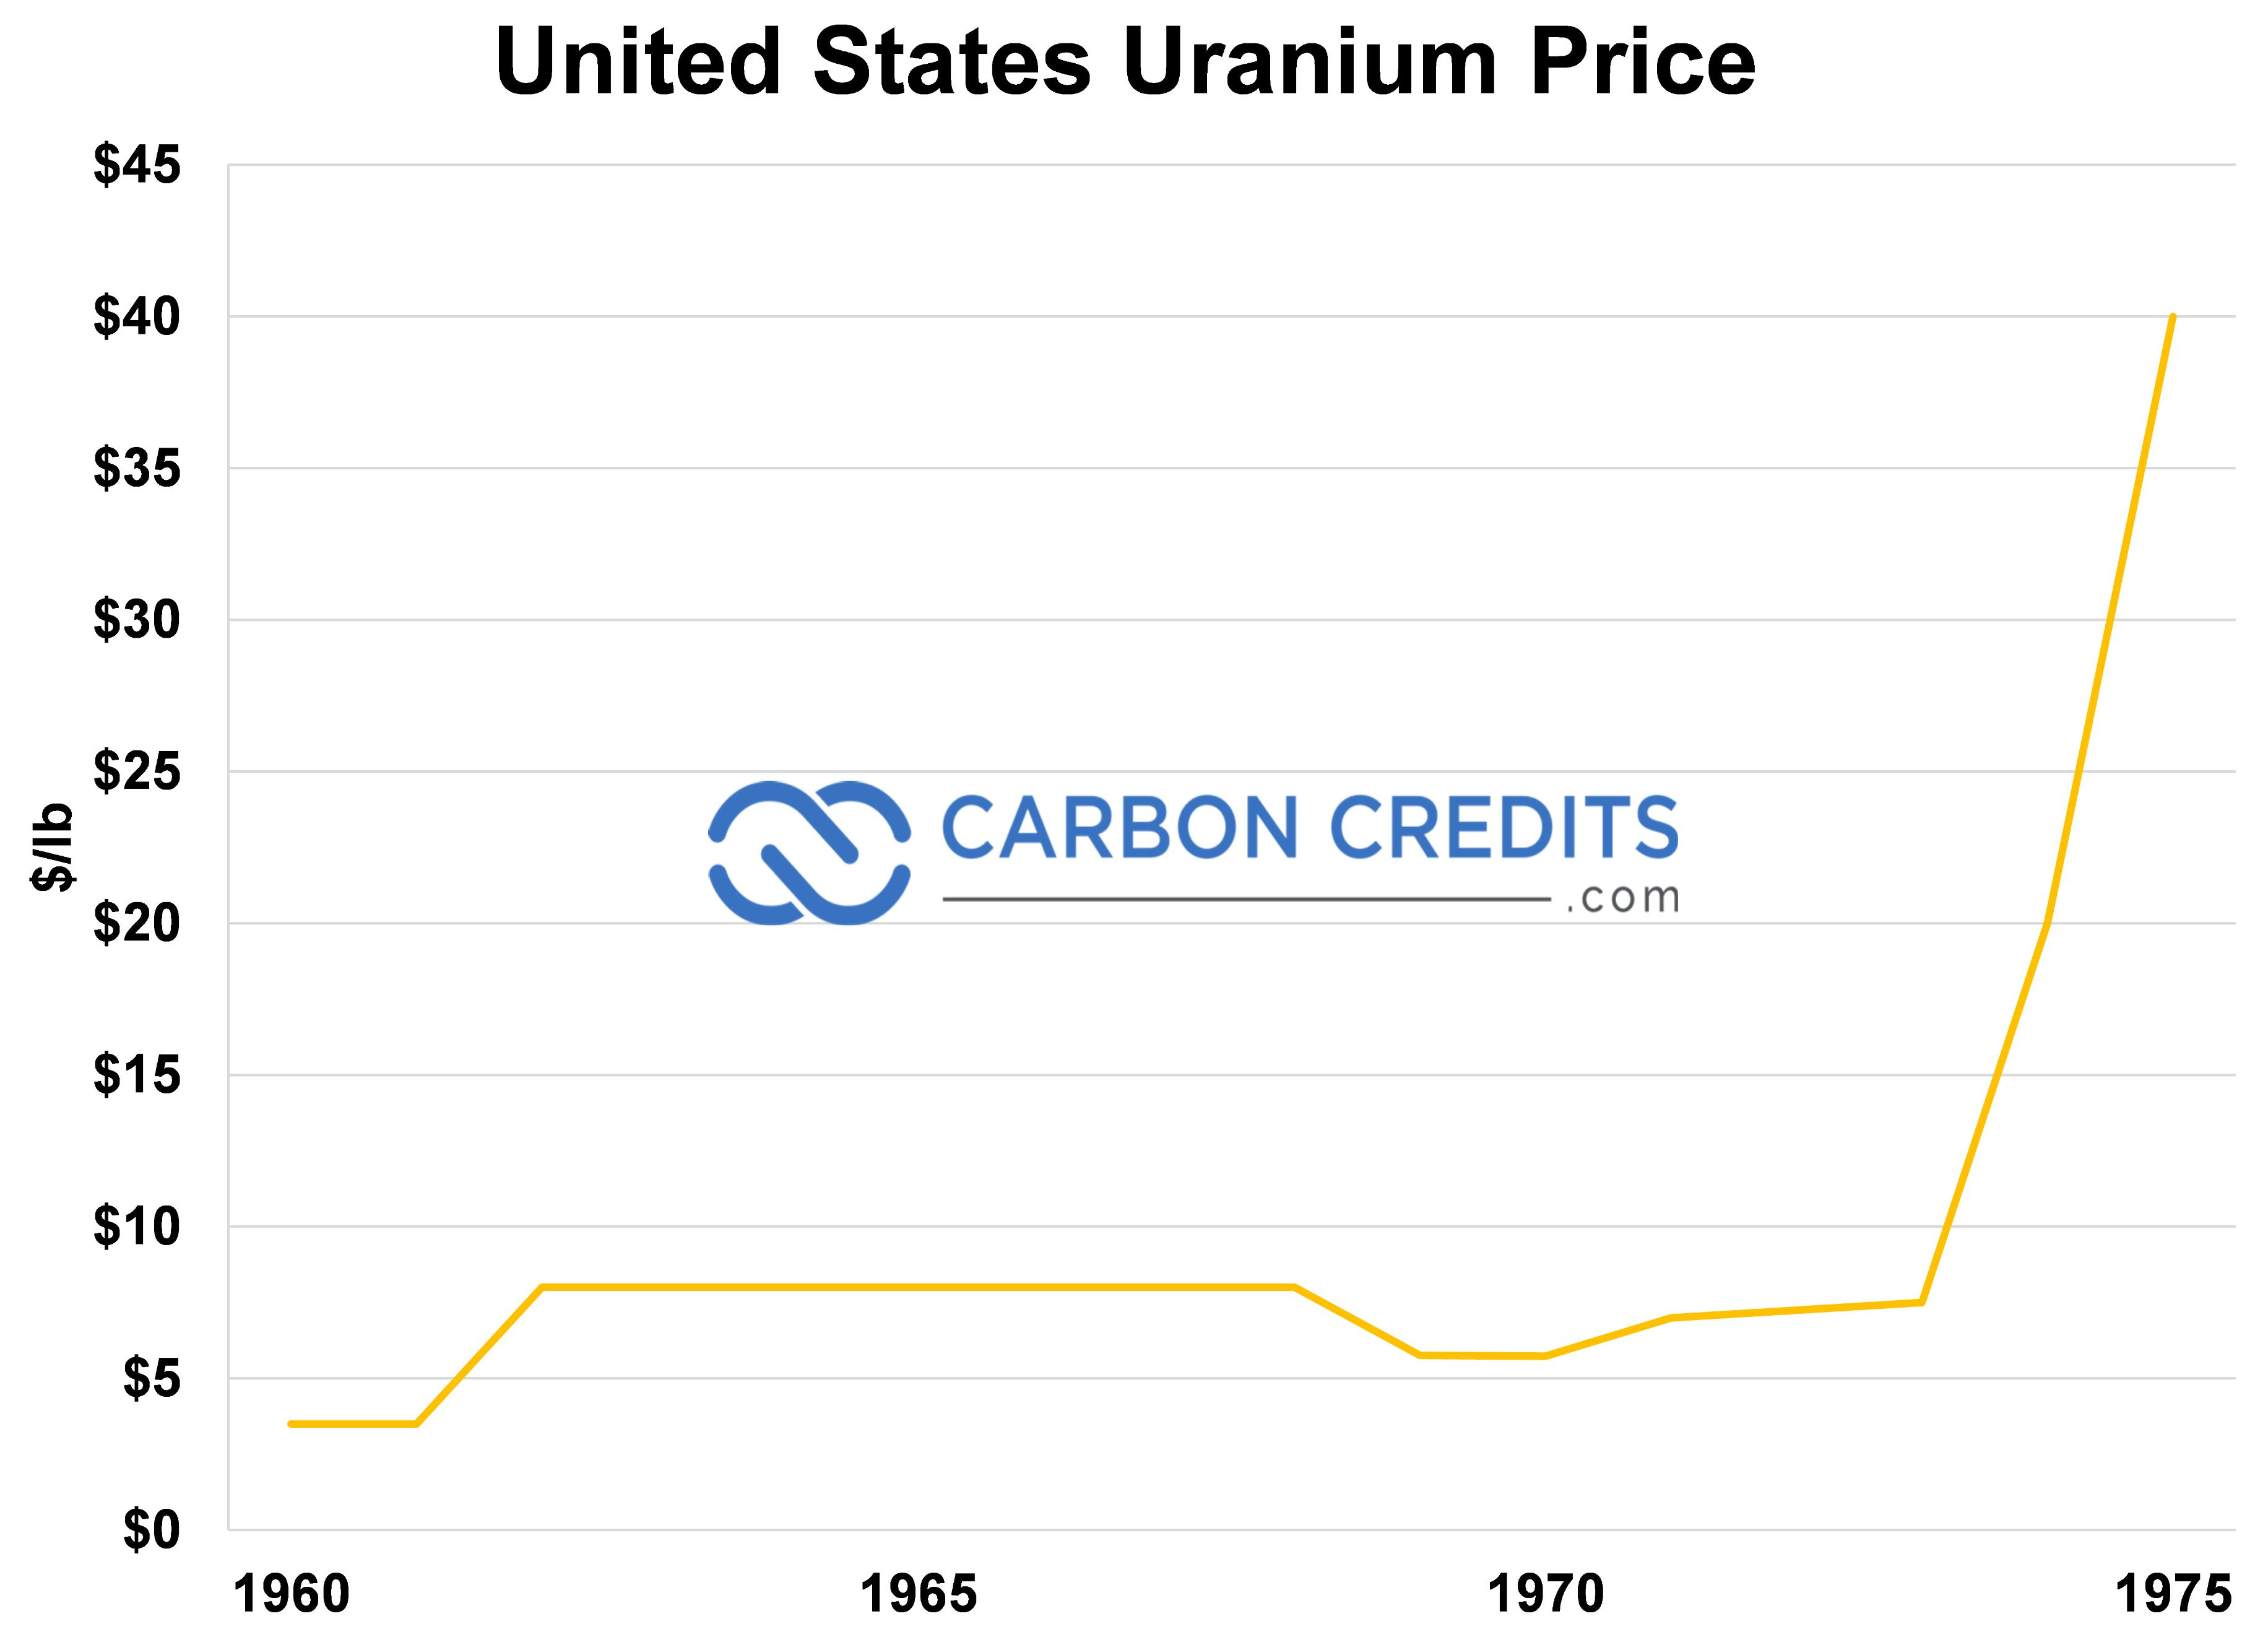 גרף קווי המציג את מחיר זיכוי הפחמן ואת מחיר האורניום בארצות הברית